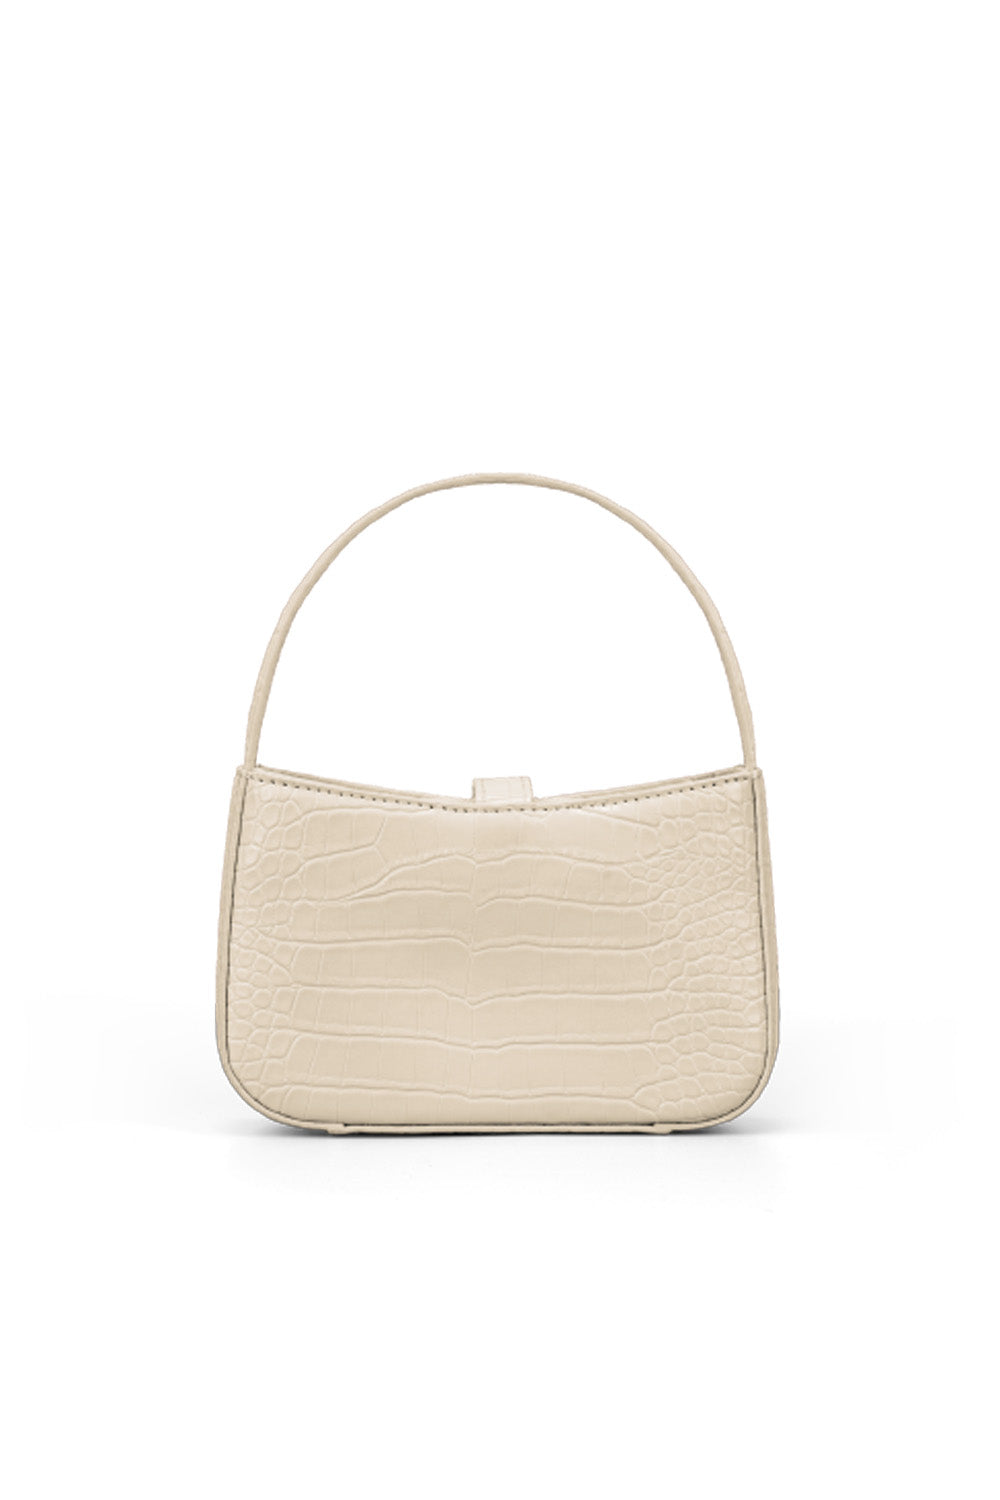 RR Juliet Croco Mini Shoulder Bag in Ivory